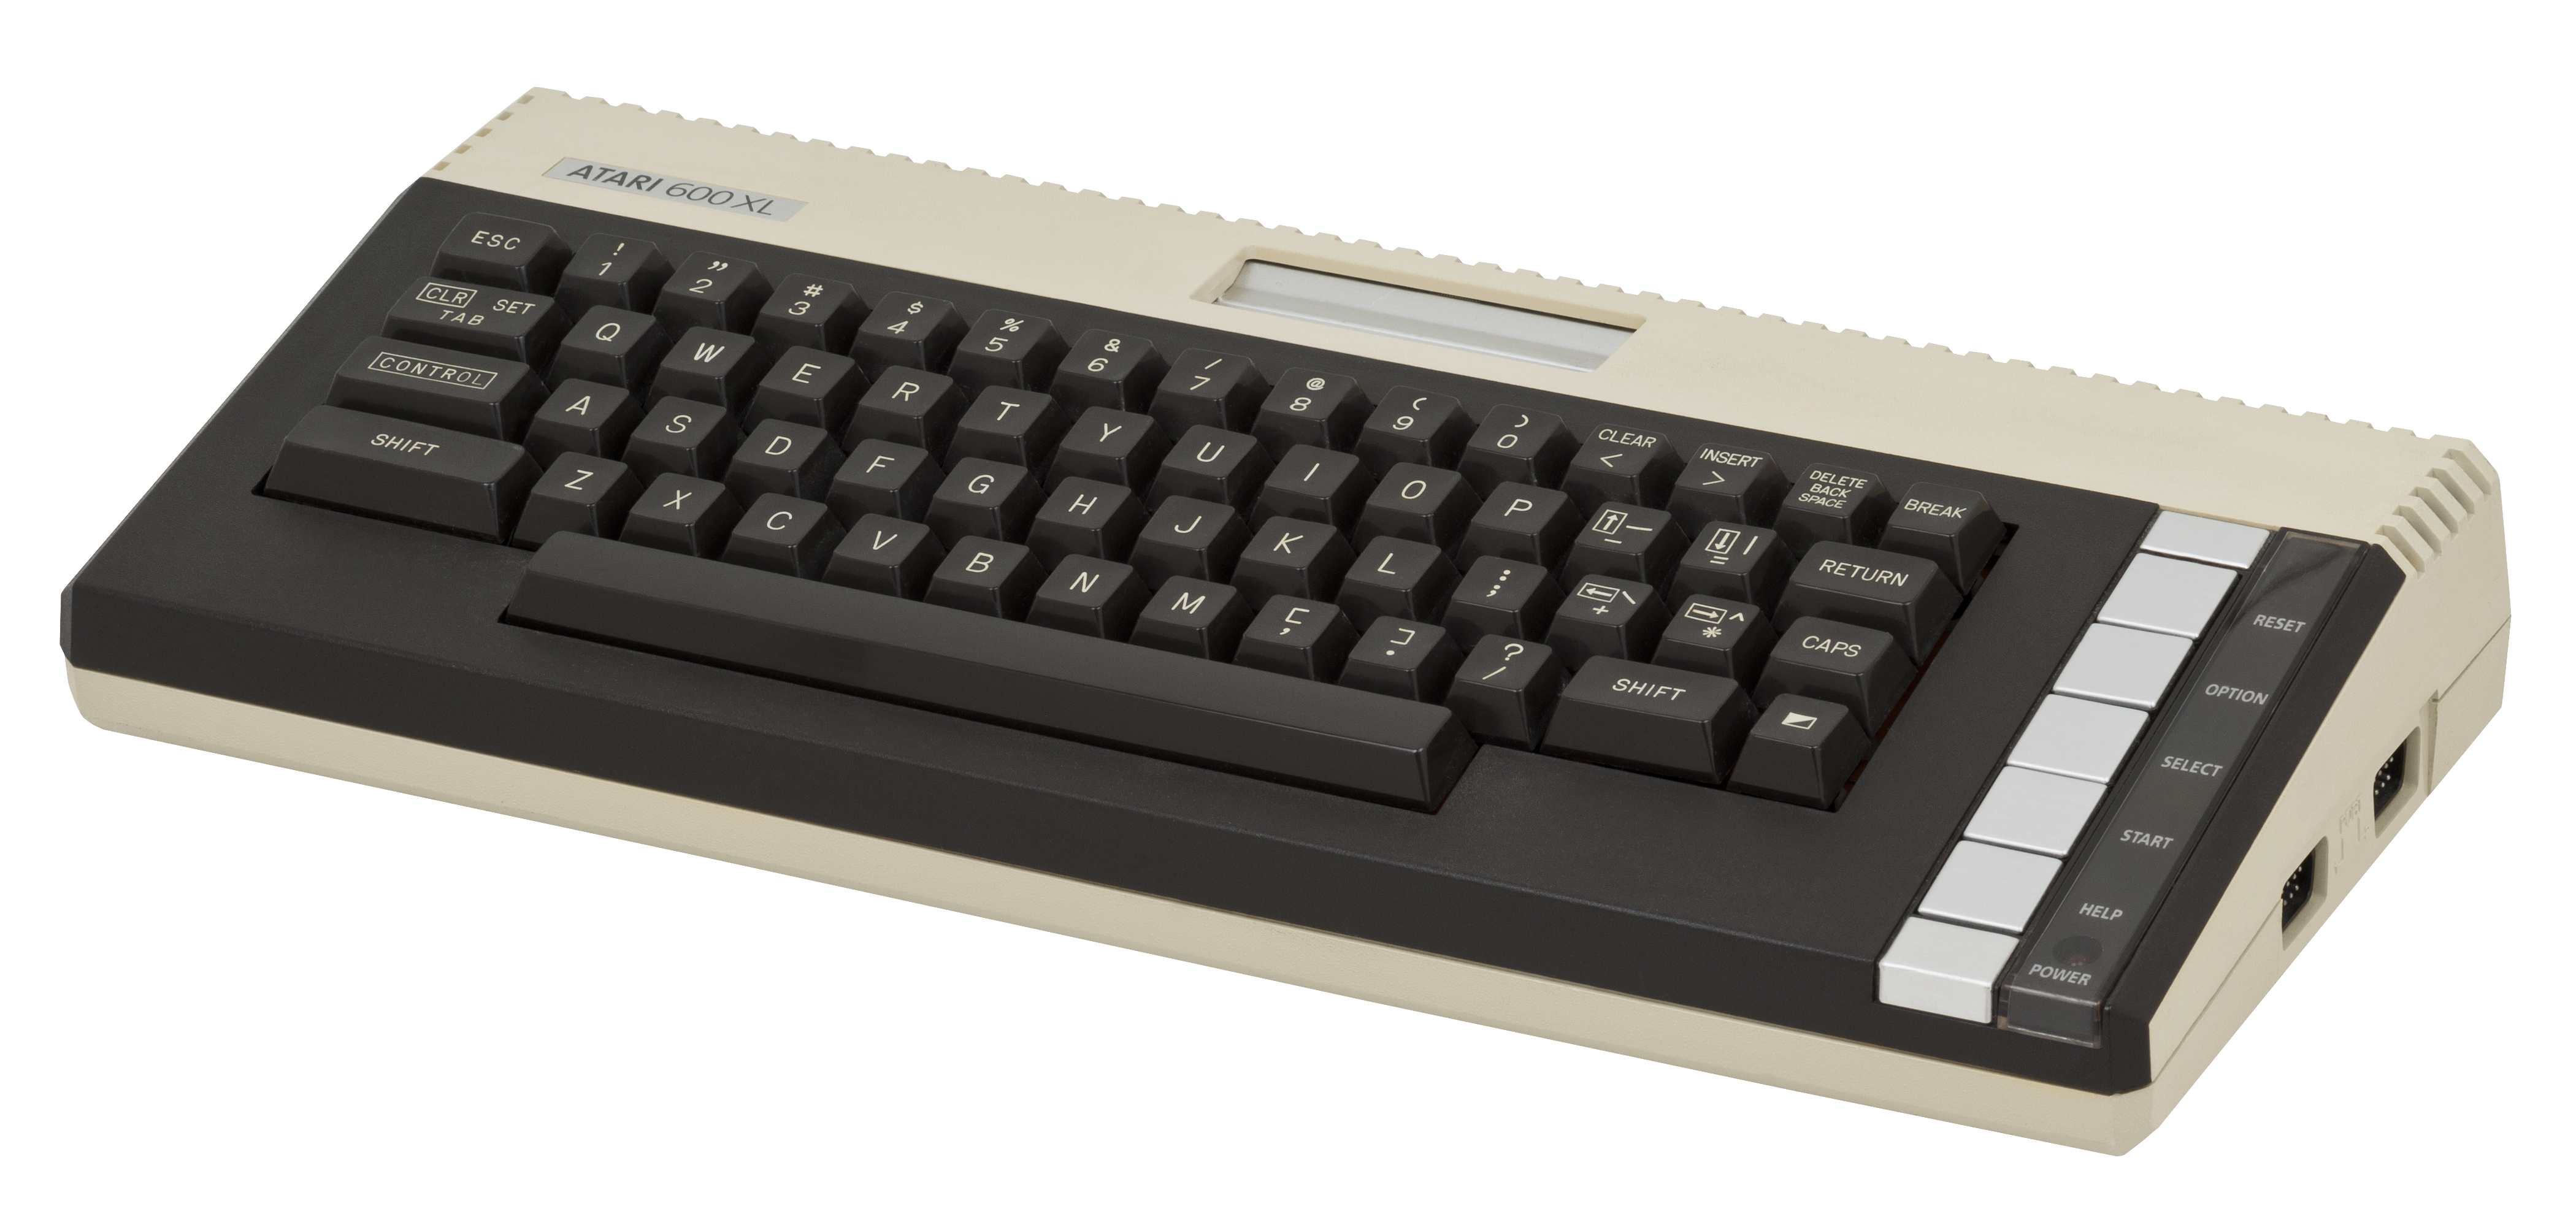 Atari-600XL-PC.jpg